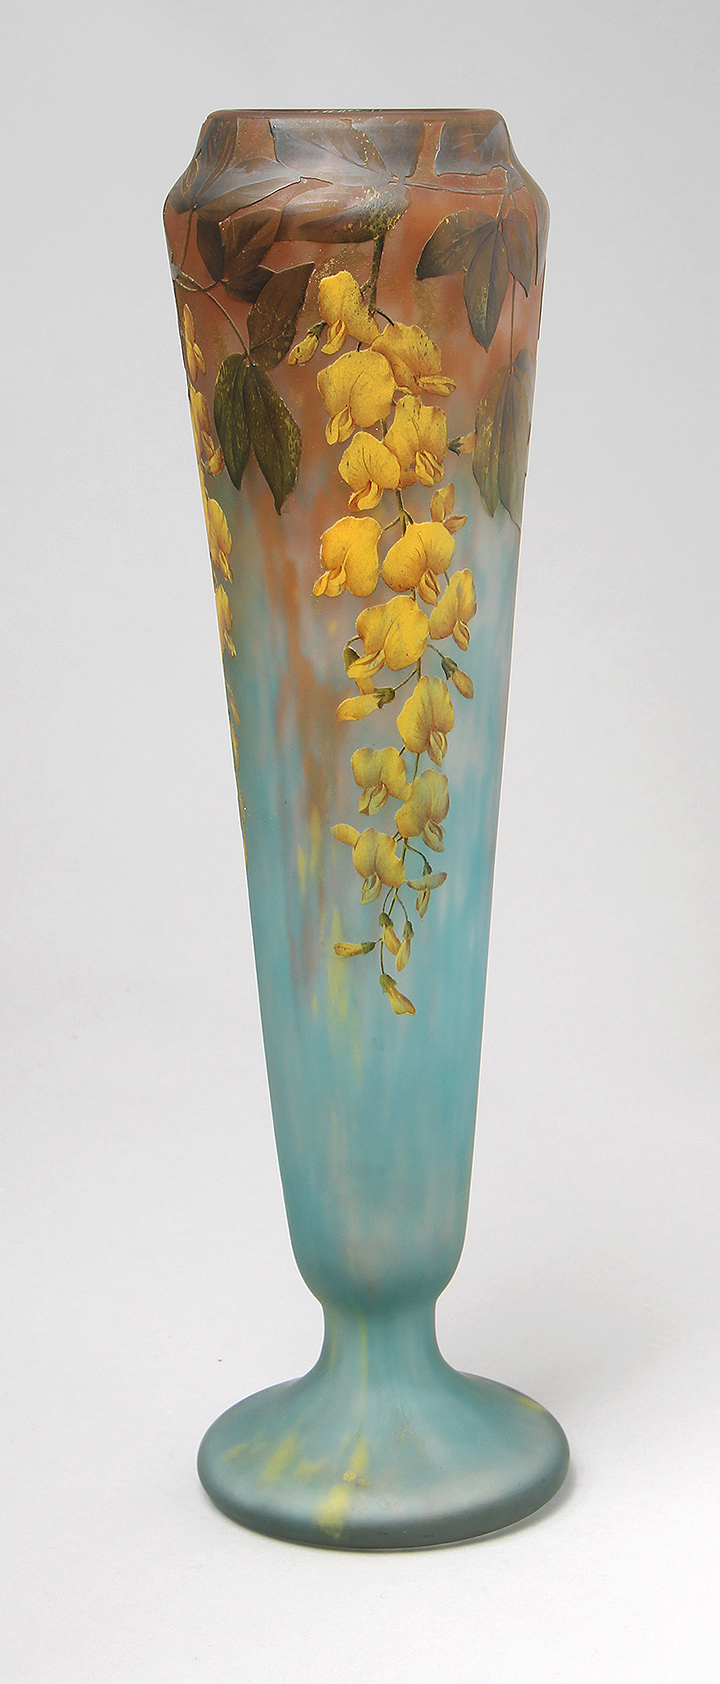 Daum Nancy, Laburnum Vase